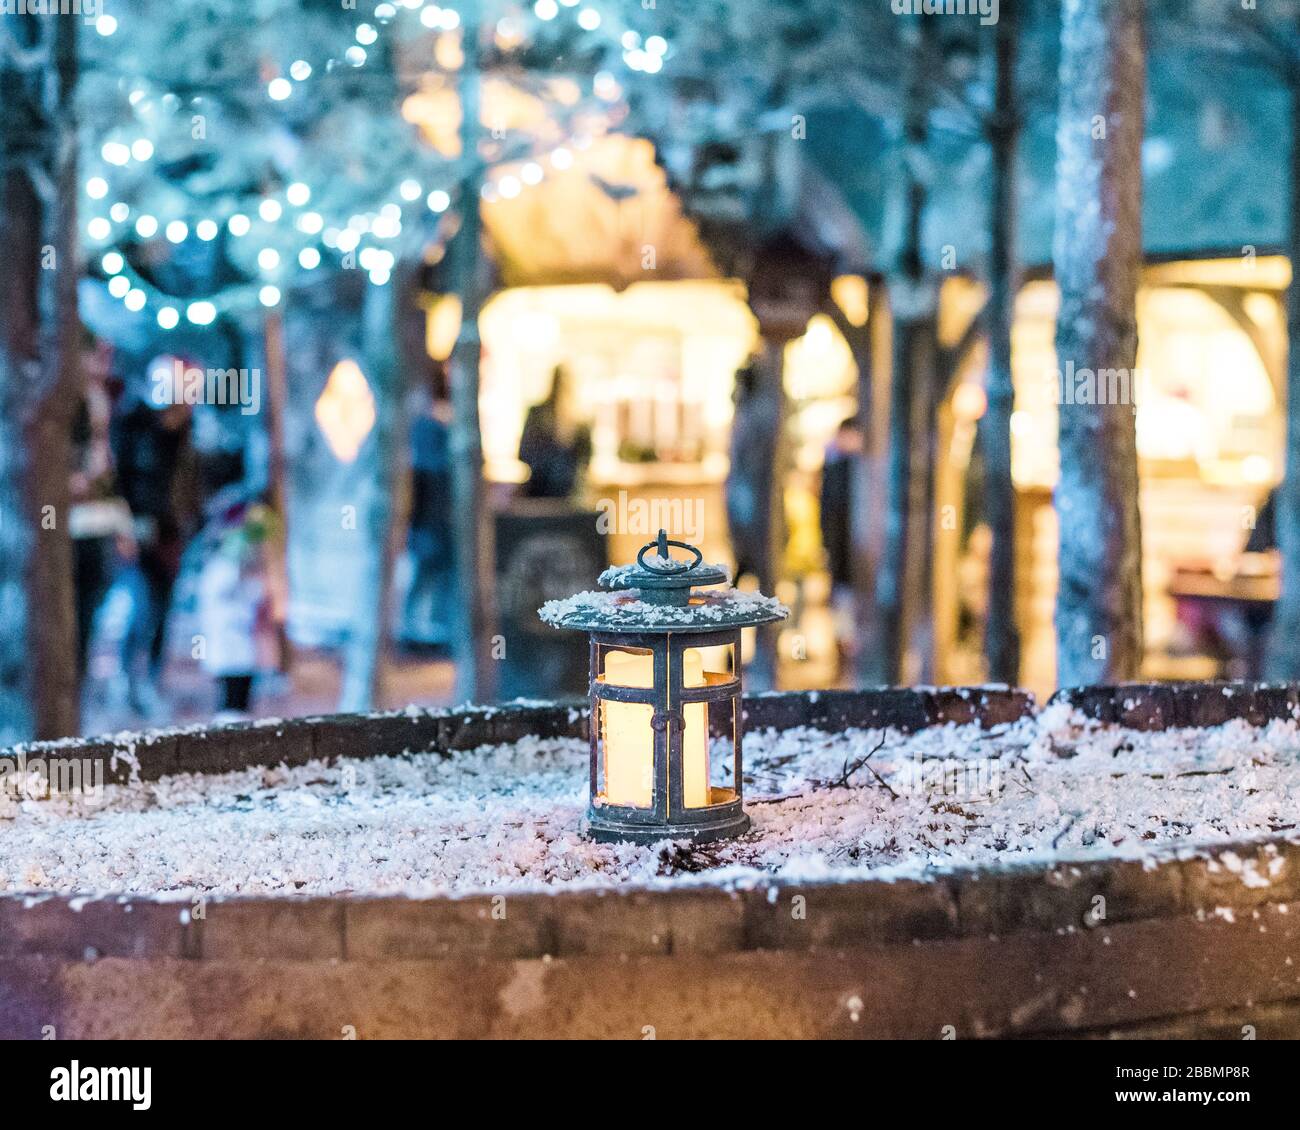 Une lanterne lugueuse sur un tonneau de bière enneigé à Noël en Angleterre Banque D'Images